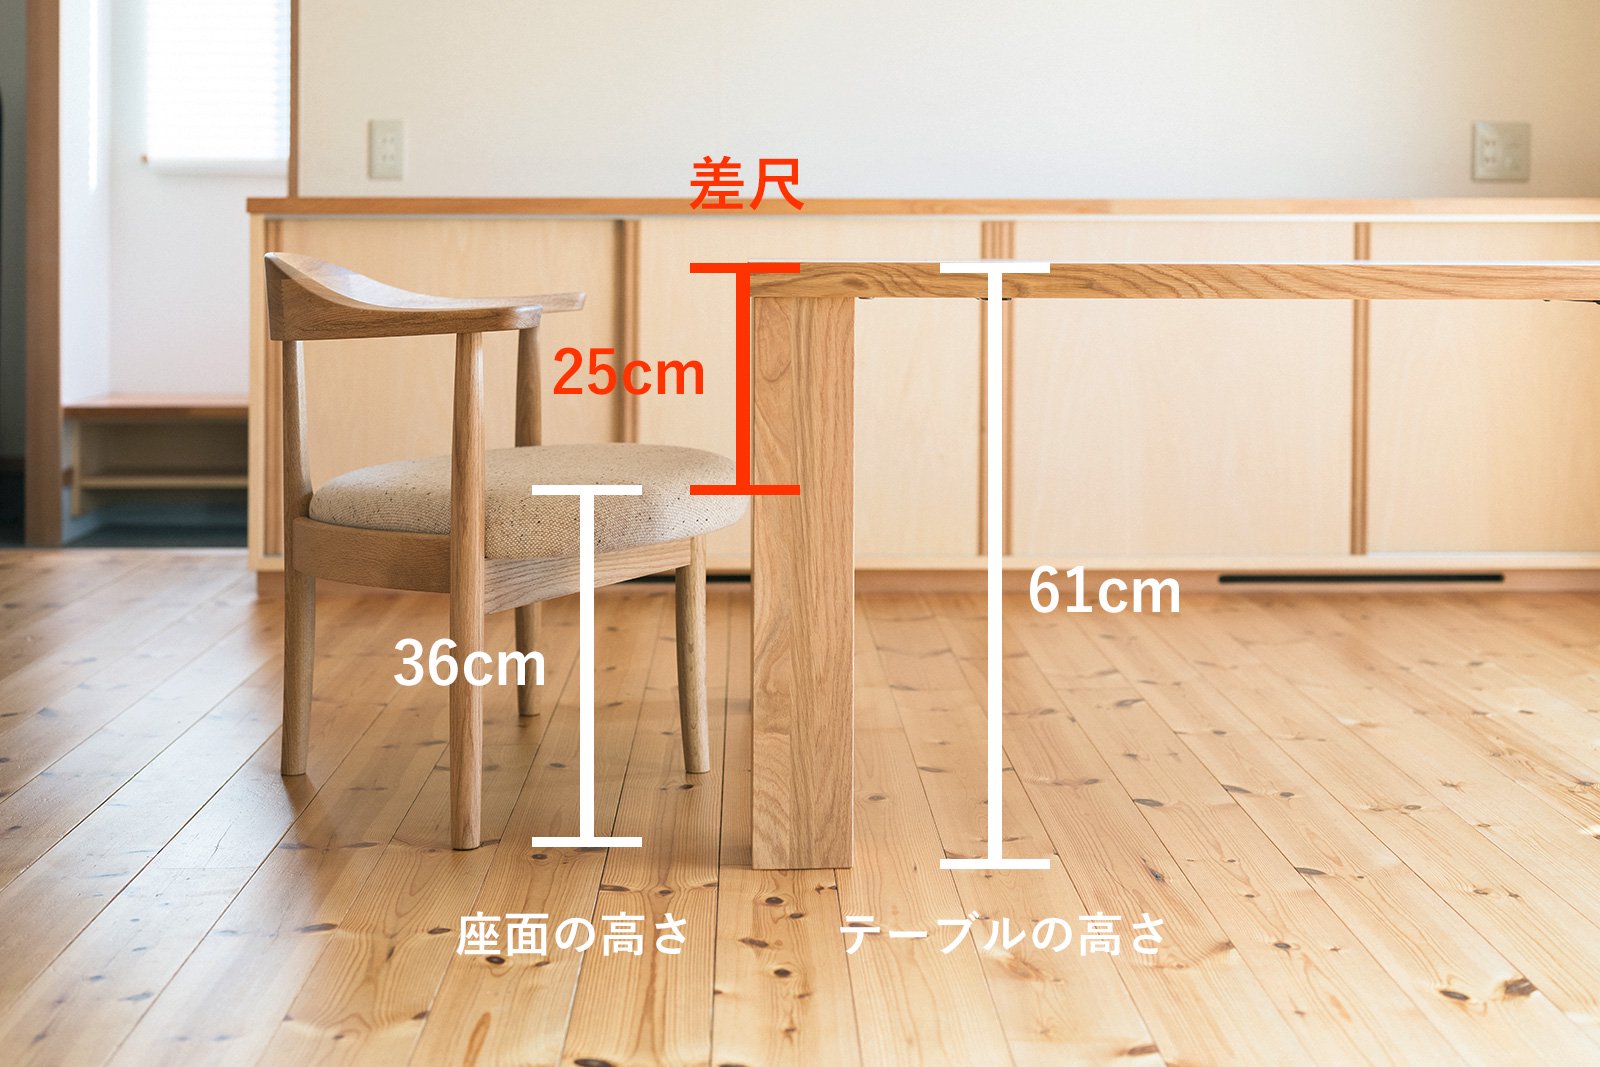 低座の椅子（36cm）とテーブルの高さ(61cm）